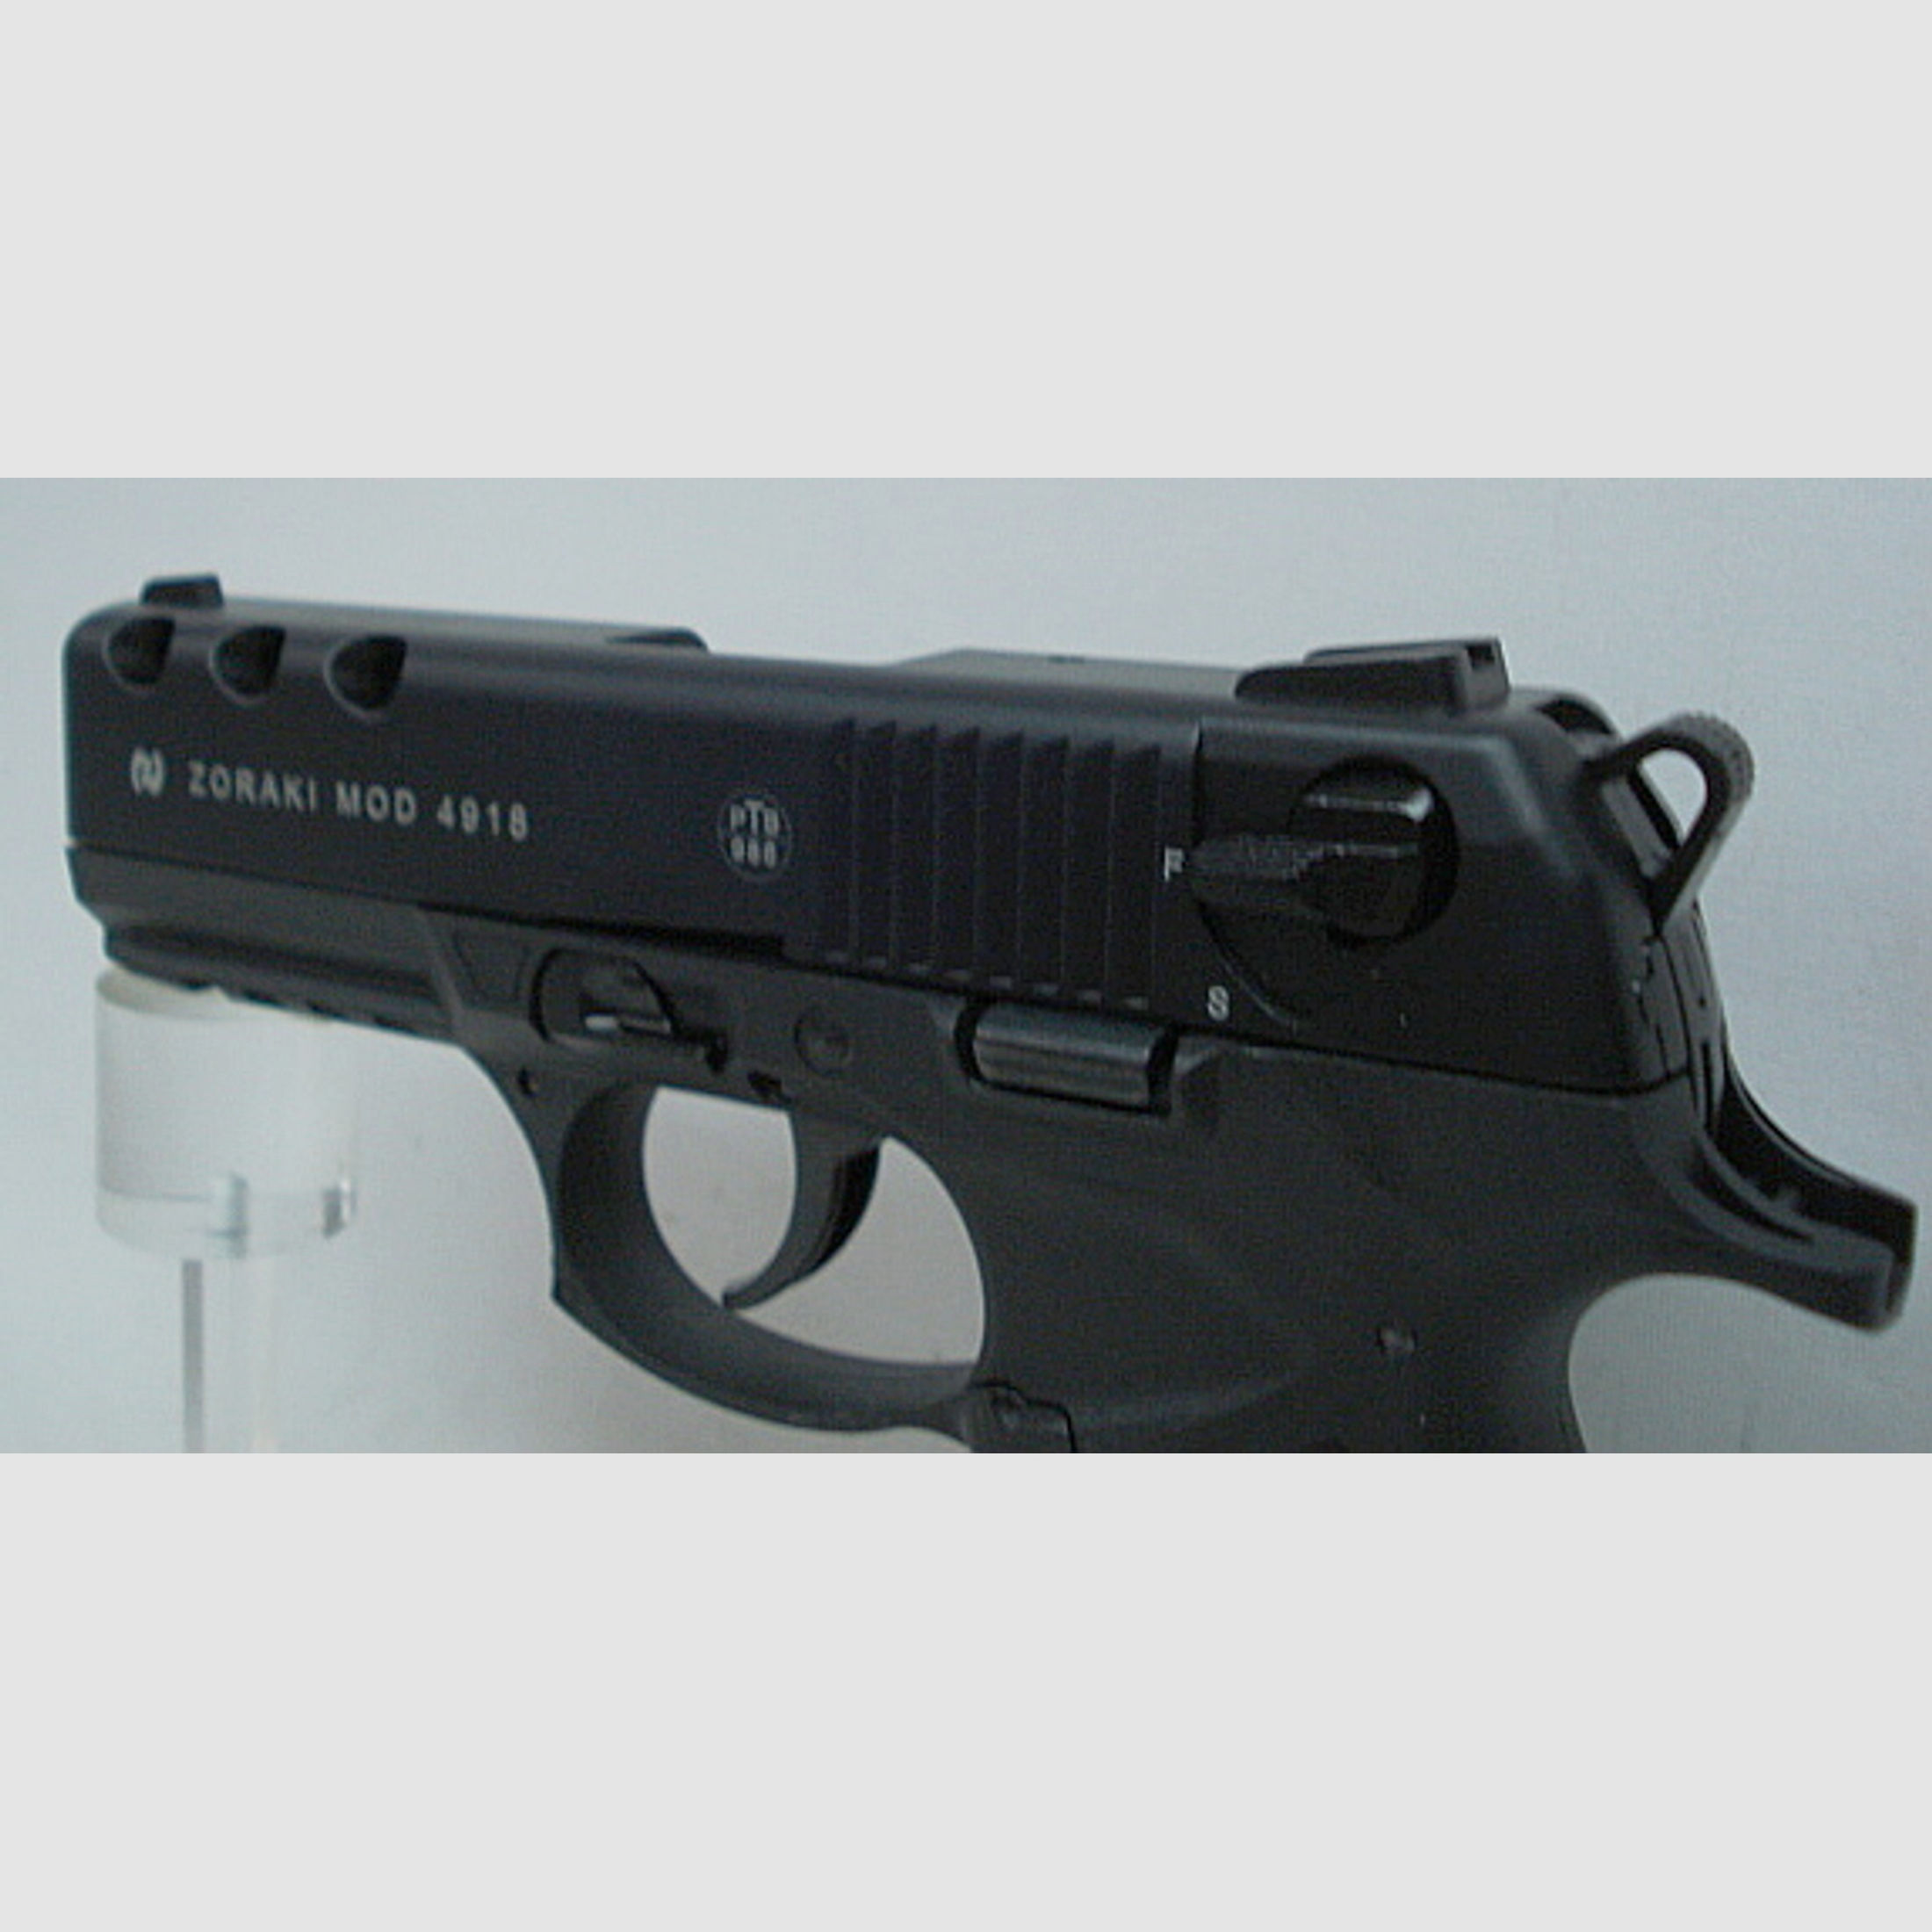 4918 Kal.9mm P.A.K. - schwarz,18Schuss